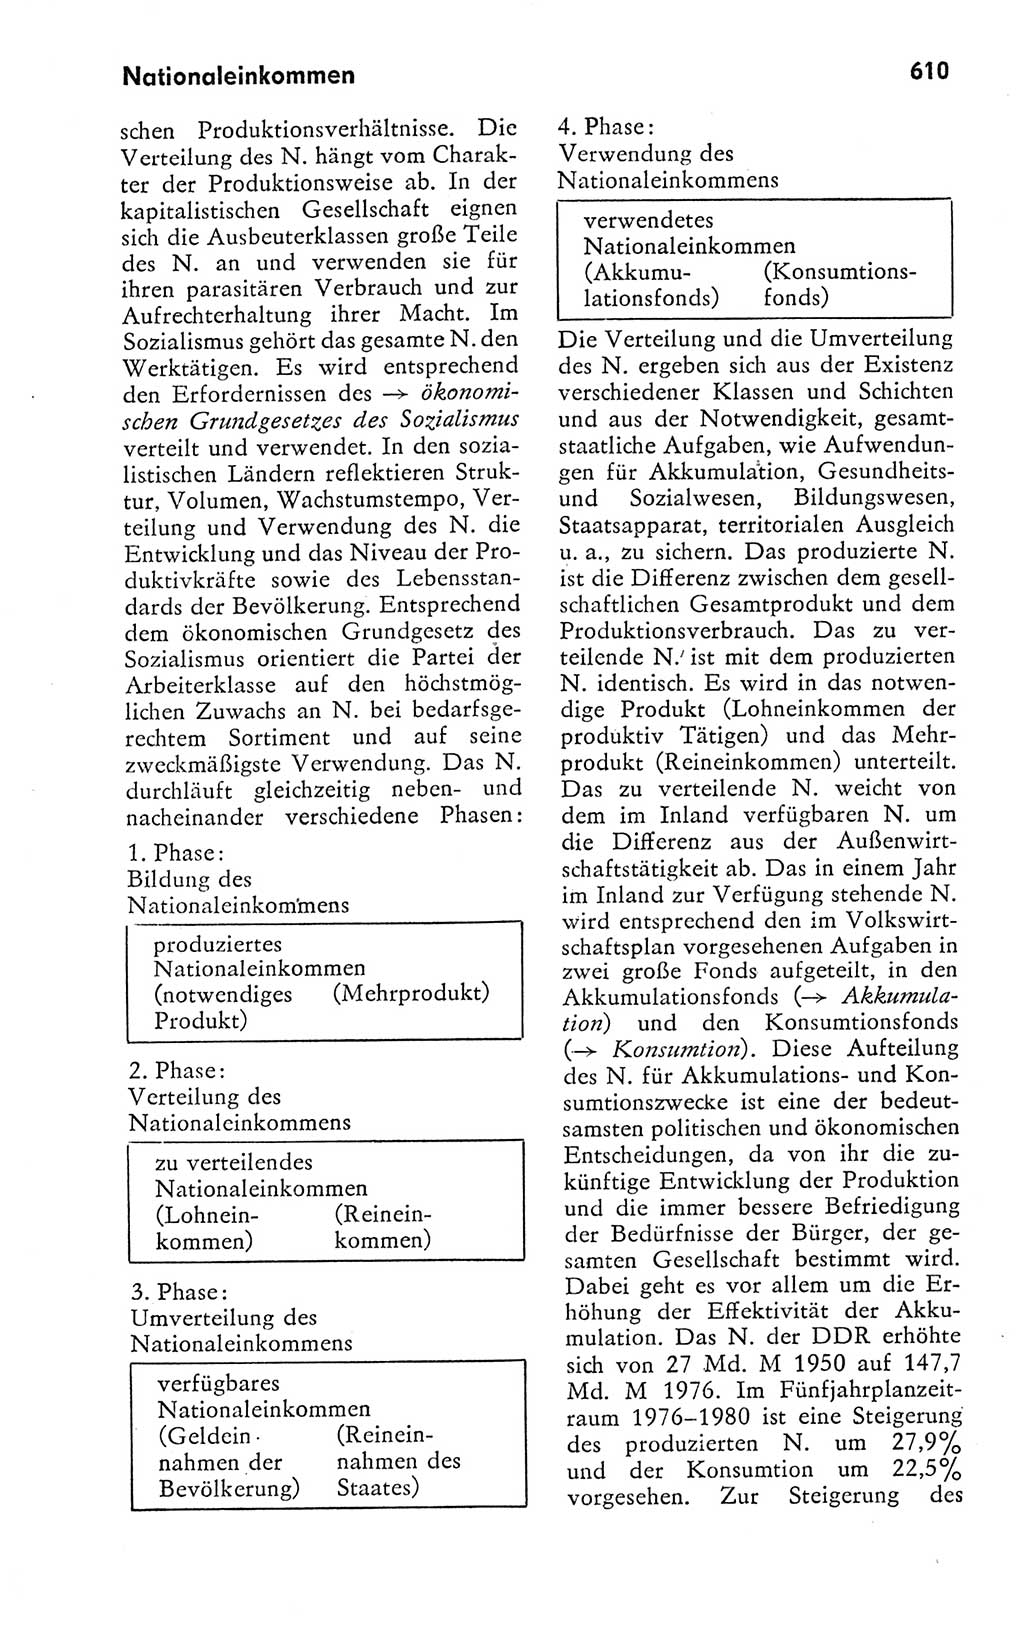 Kleines politisches Wörterbuch [Deutsche Demokratische Republik (DDR)] 1978, Seite 610 (Kl. pol. Wb. DDR 1978, S. 610)